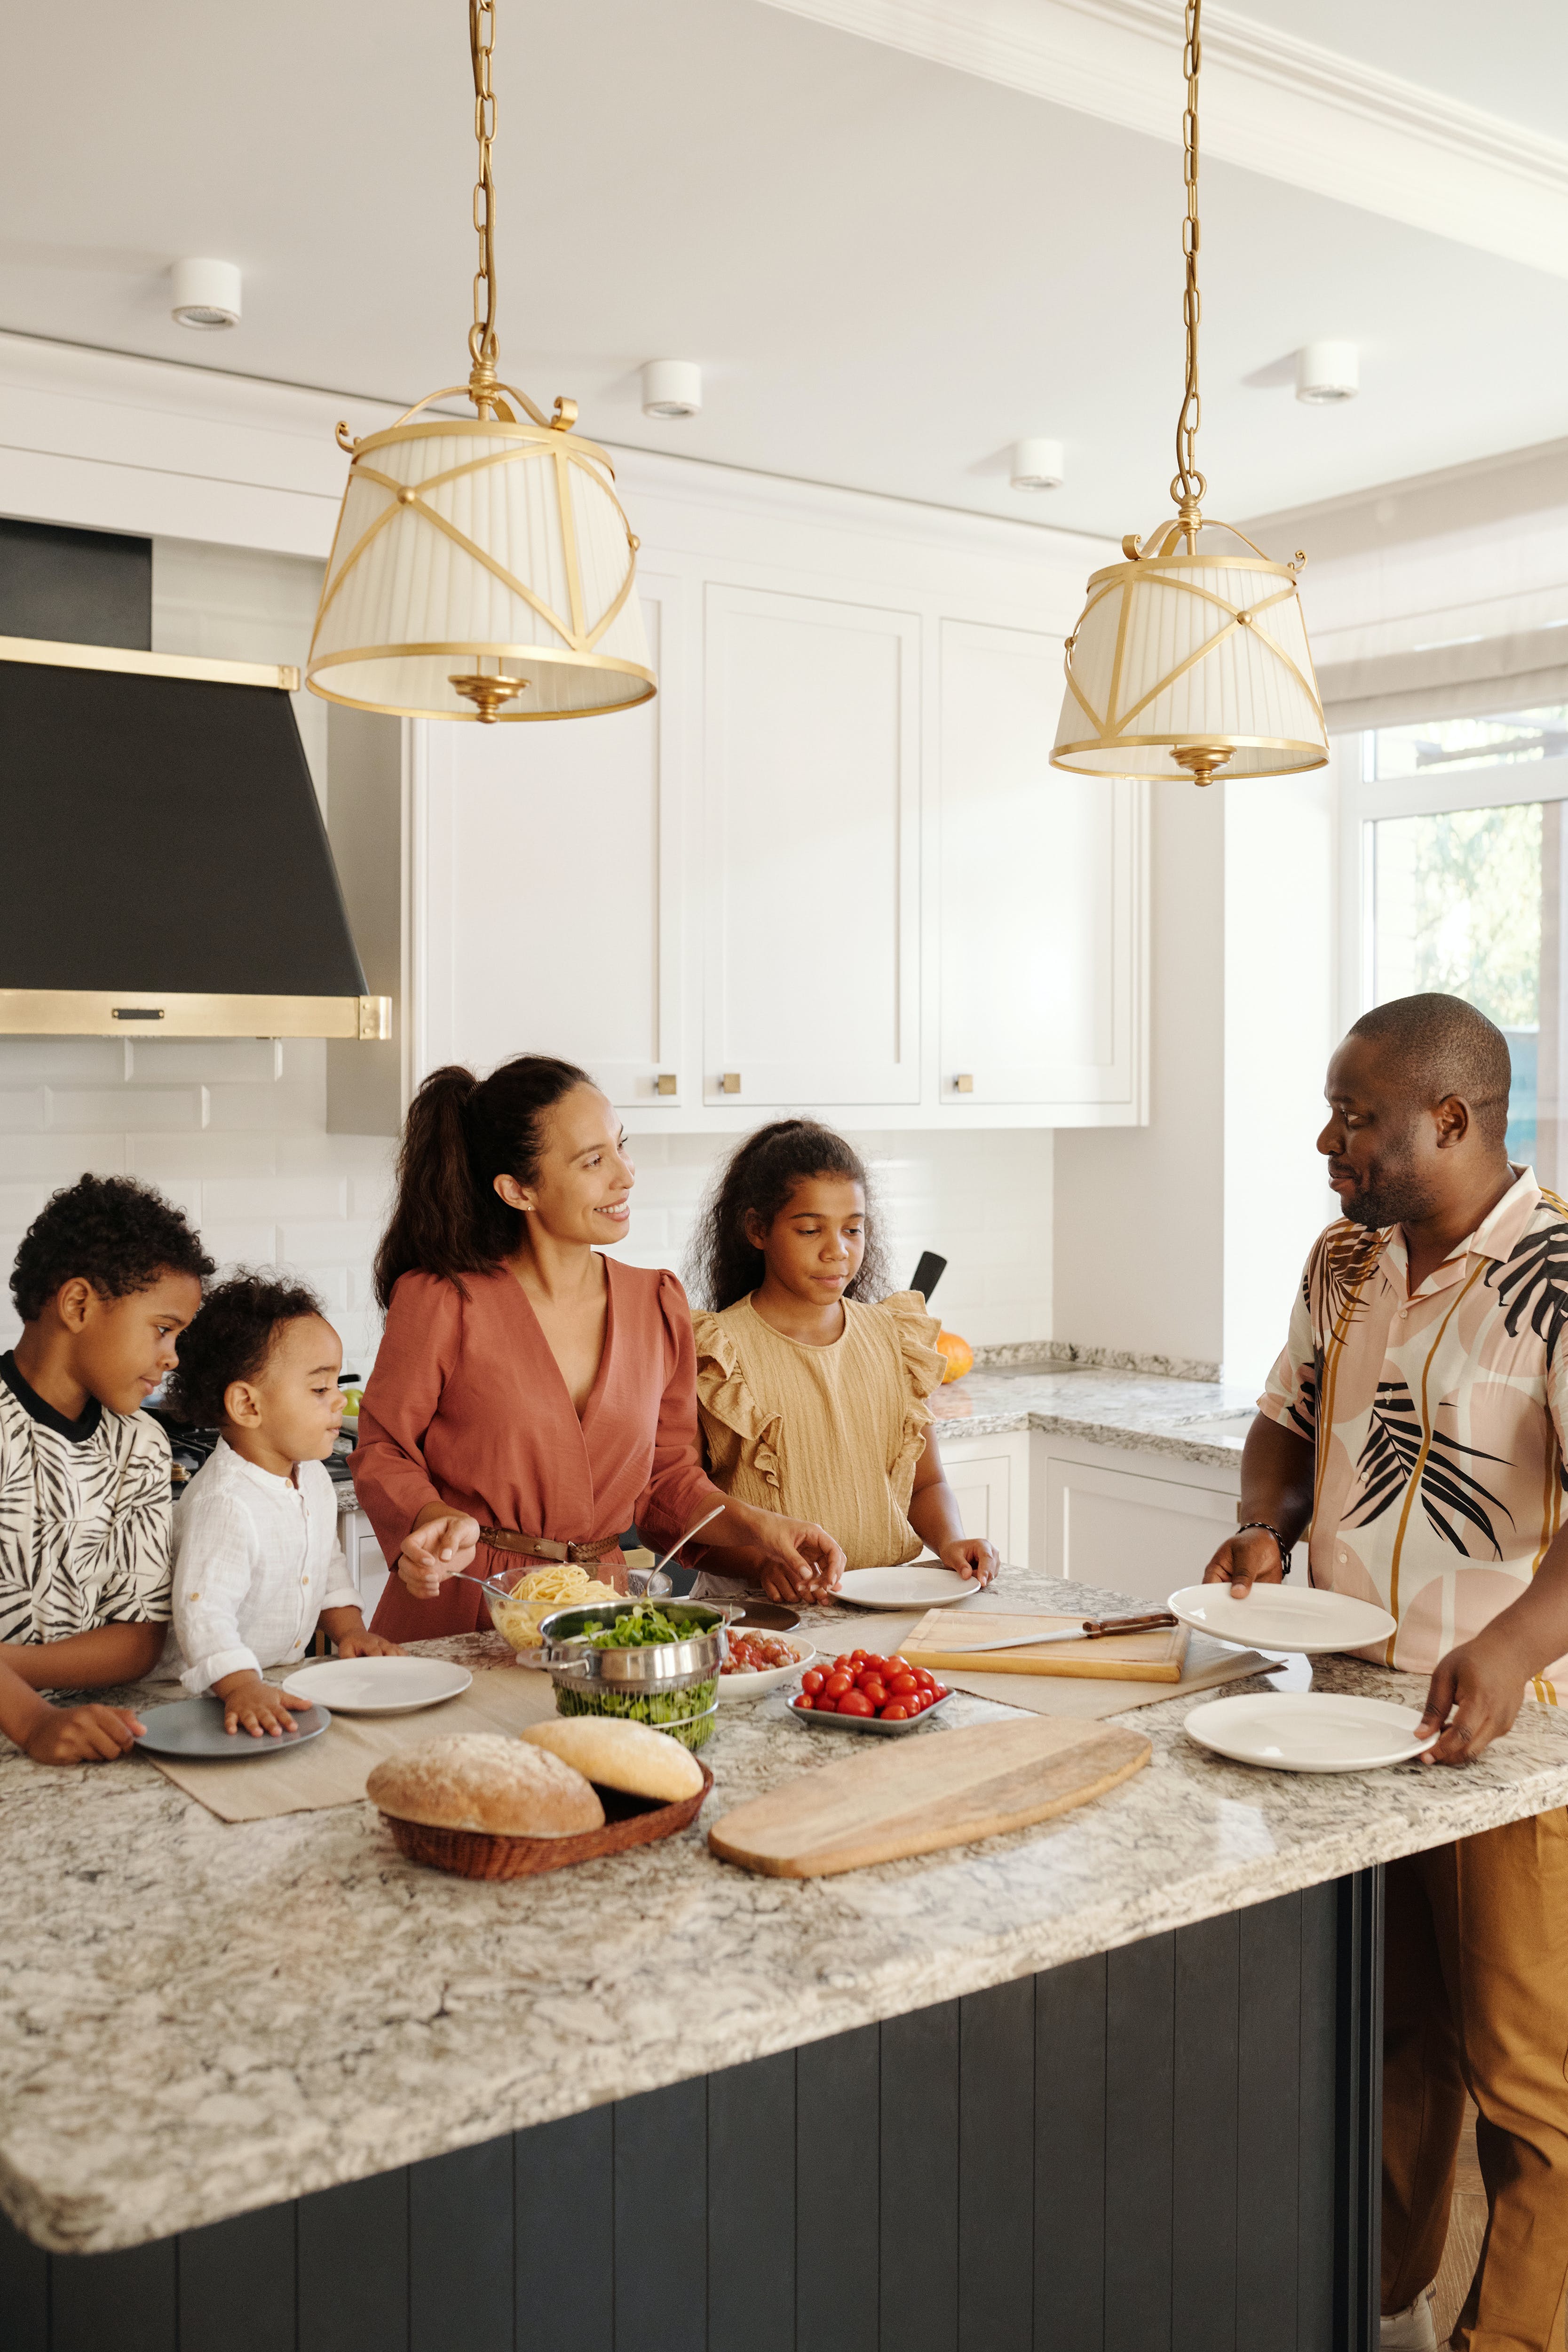 Eine große Familie, die gemeinsam in der Küche eine Mahlzeit zubereitet | Quelle: Pexels